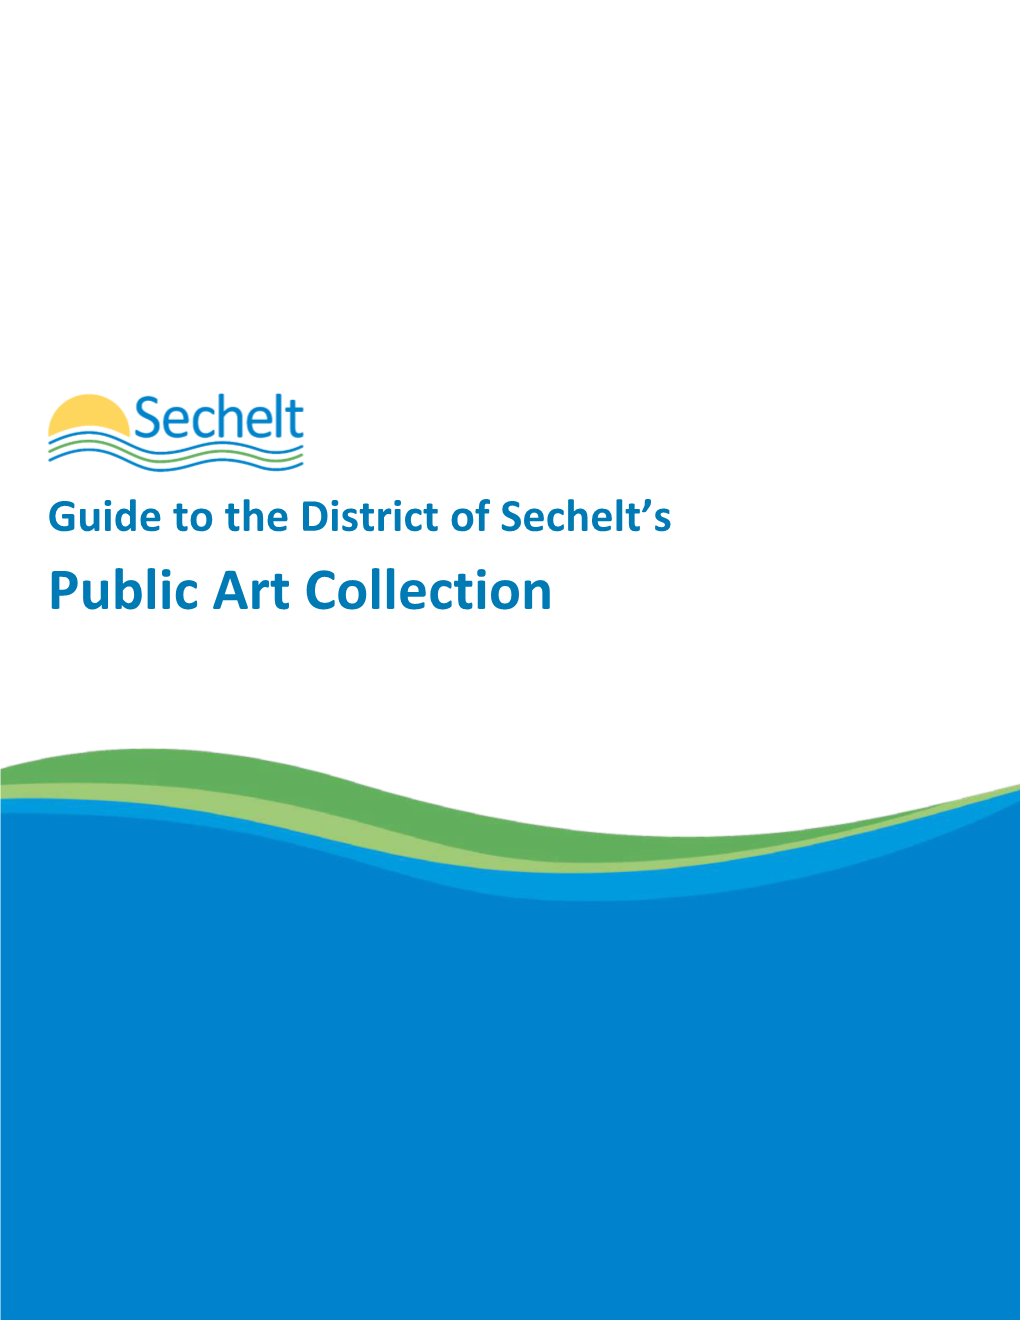 District of Sechelt Public Art Collection